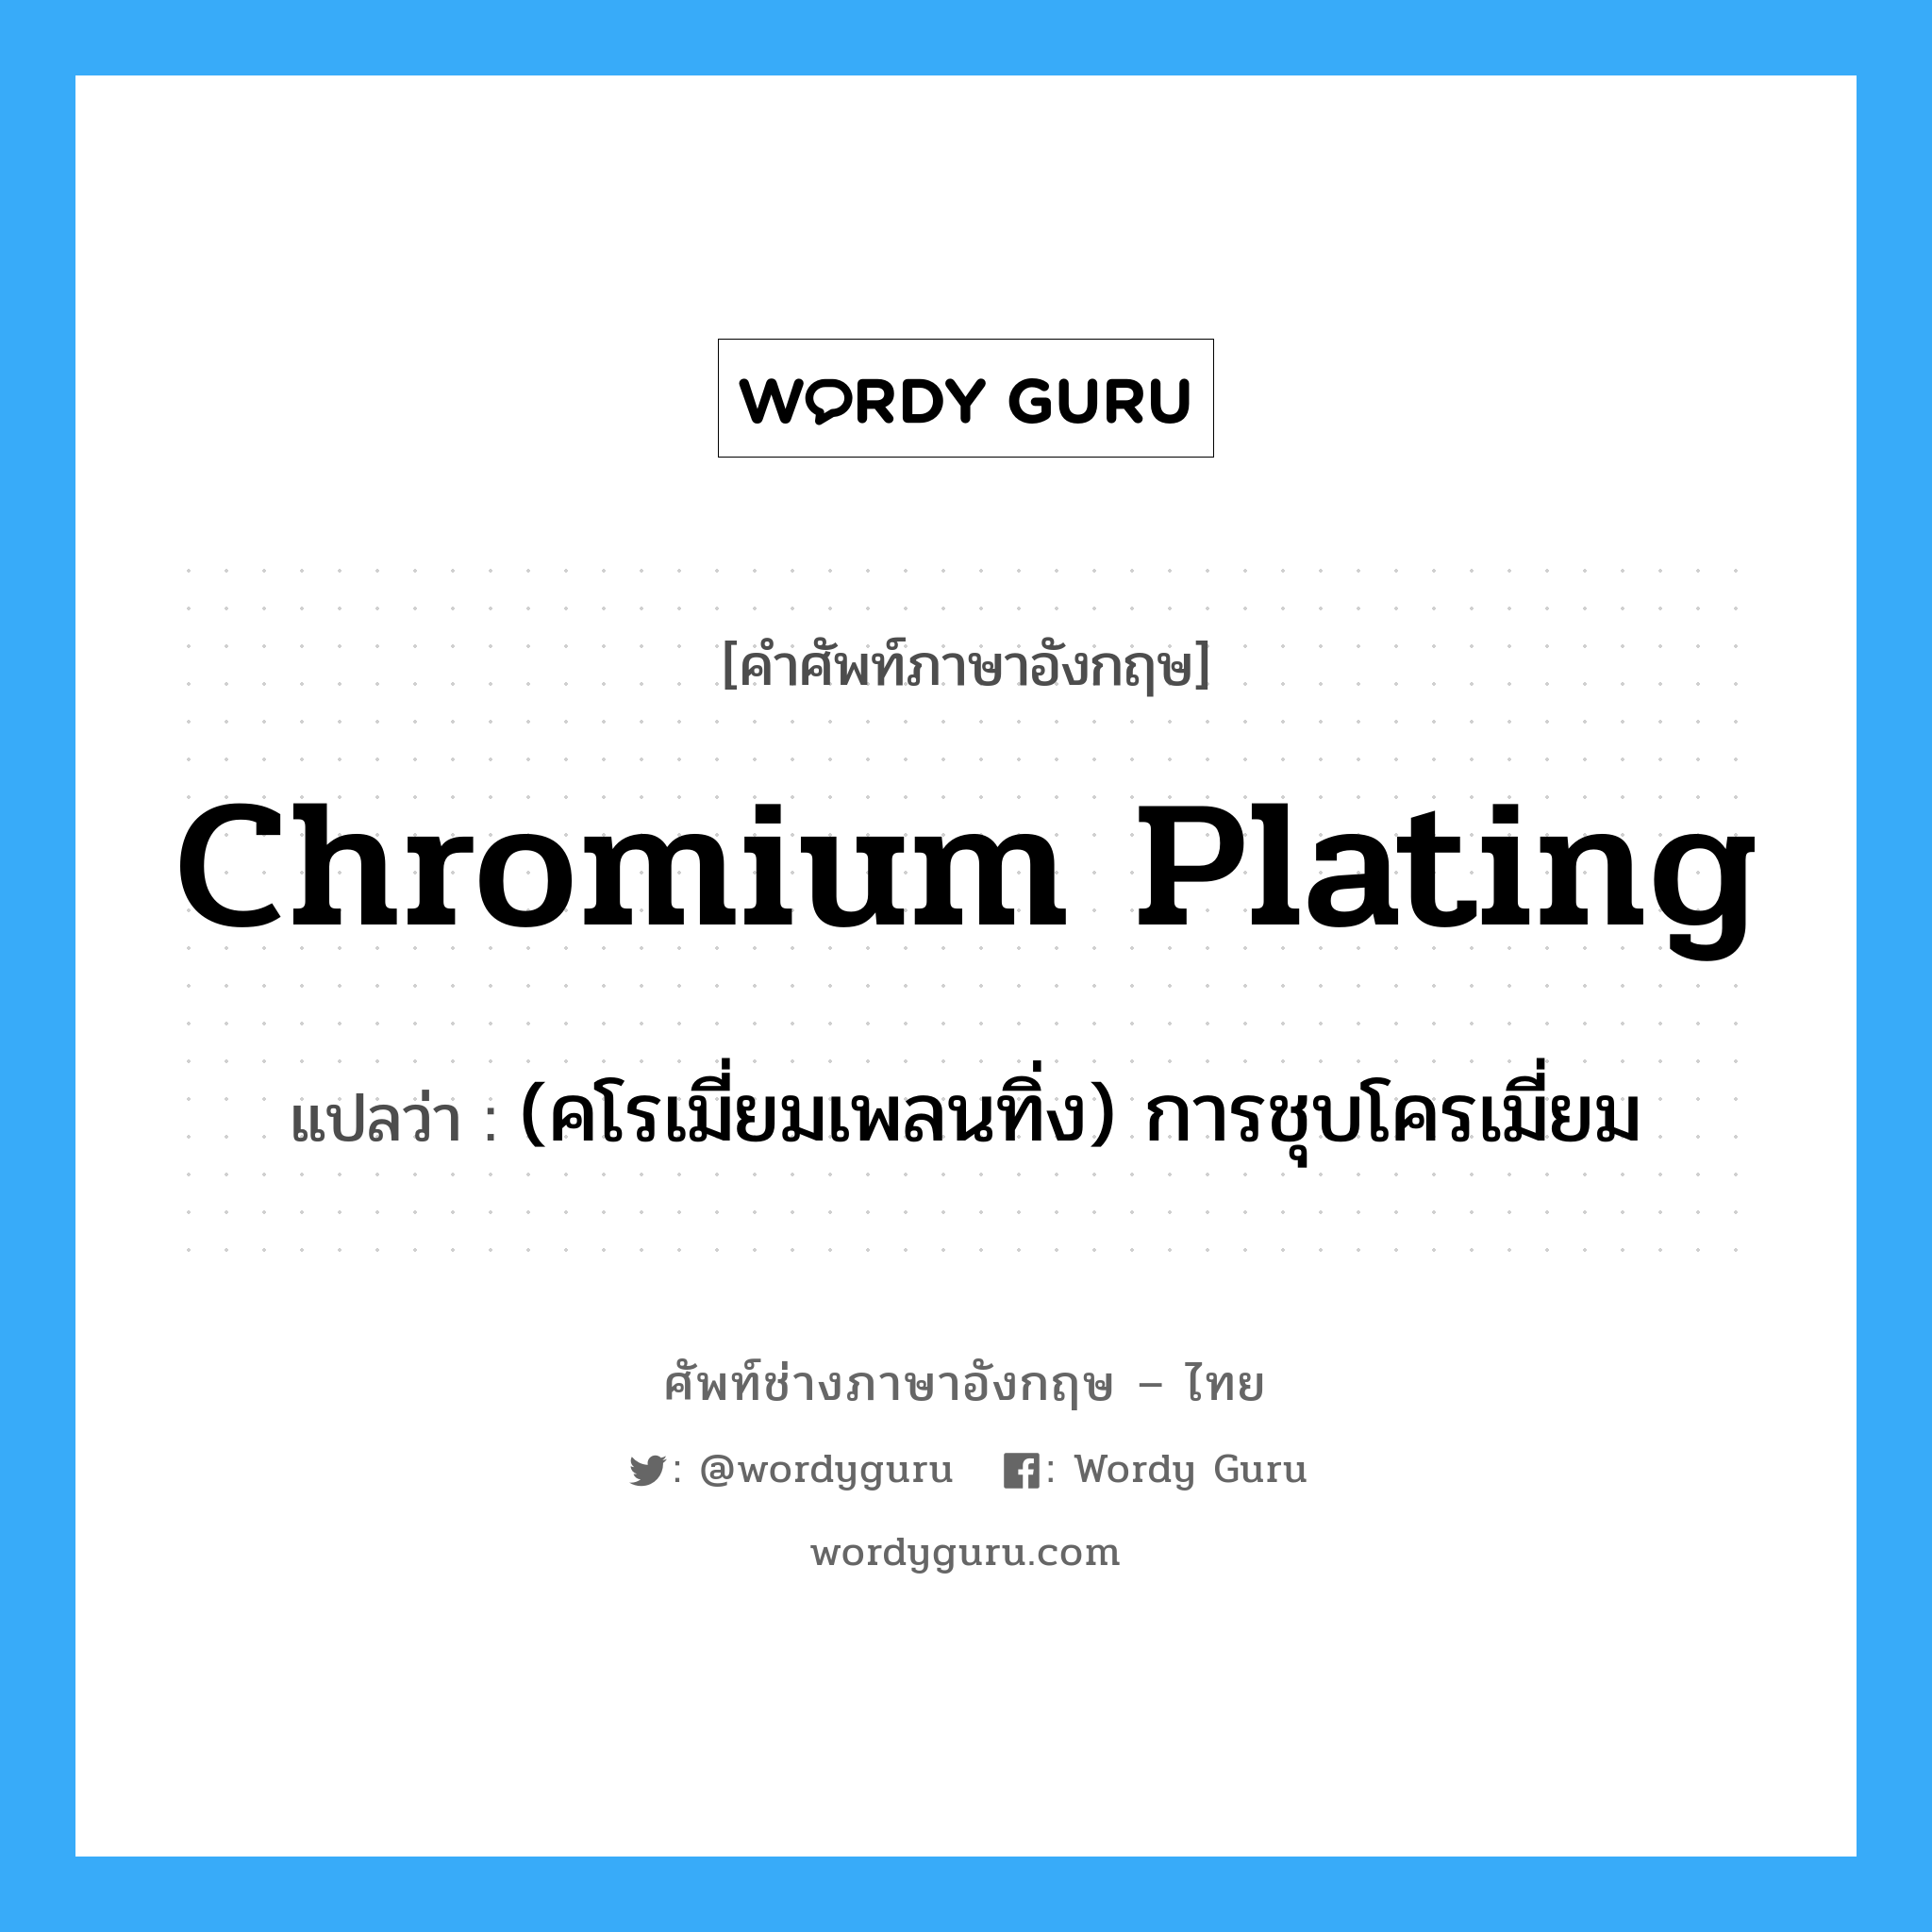 (คโรเมี่ยมเพลนทิ่ง) การชุบโครเมี่ยม ภาษาอังกฤษ?, คำศัพท์ช่างภาษาอังกฤษ - ไทย (คโรเมี่ยมเพลนทิ่ง) การชุบโครเมี่ยม คำศัพท์ภาษาอังกฤษ (คโรเมี่ยมเพลนทิ่ง) การชุบโครเมี่ยม แปลว่า chromium plating